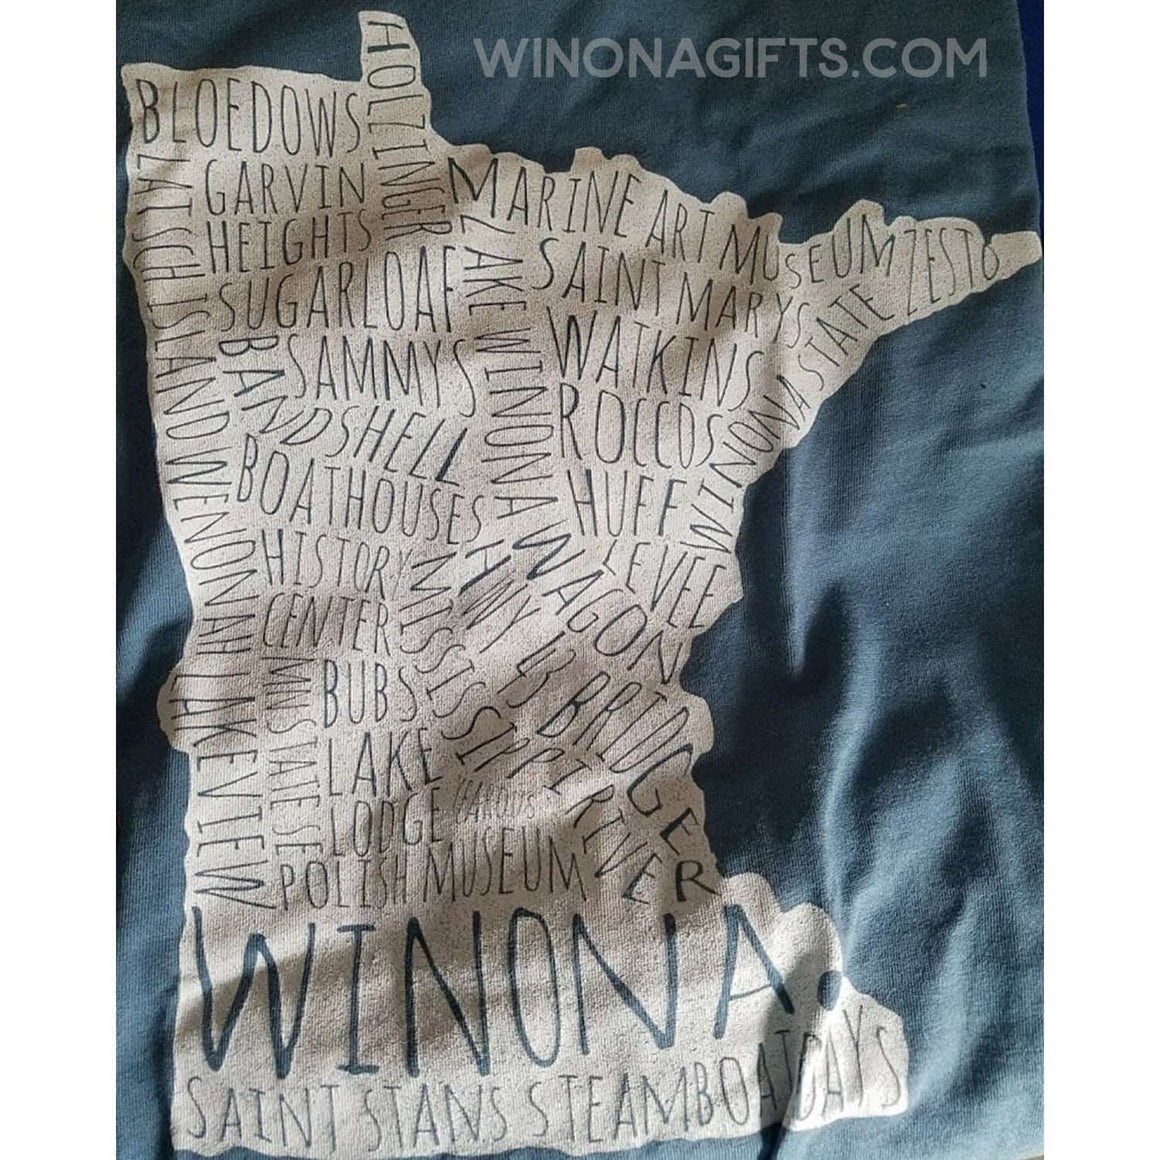 Winona T-Shirt White Typography Map, Canvas Unisex V-Neck Shirt - Kari Yearous Photography WinonaGifts KetoGifts LoveDecorah